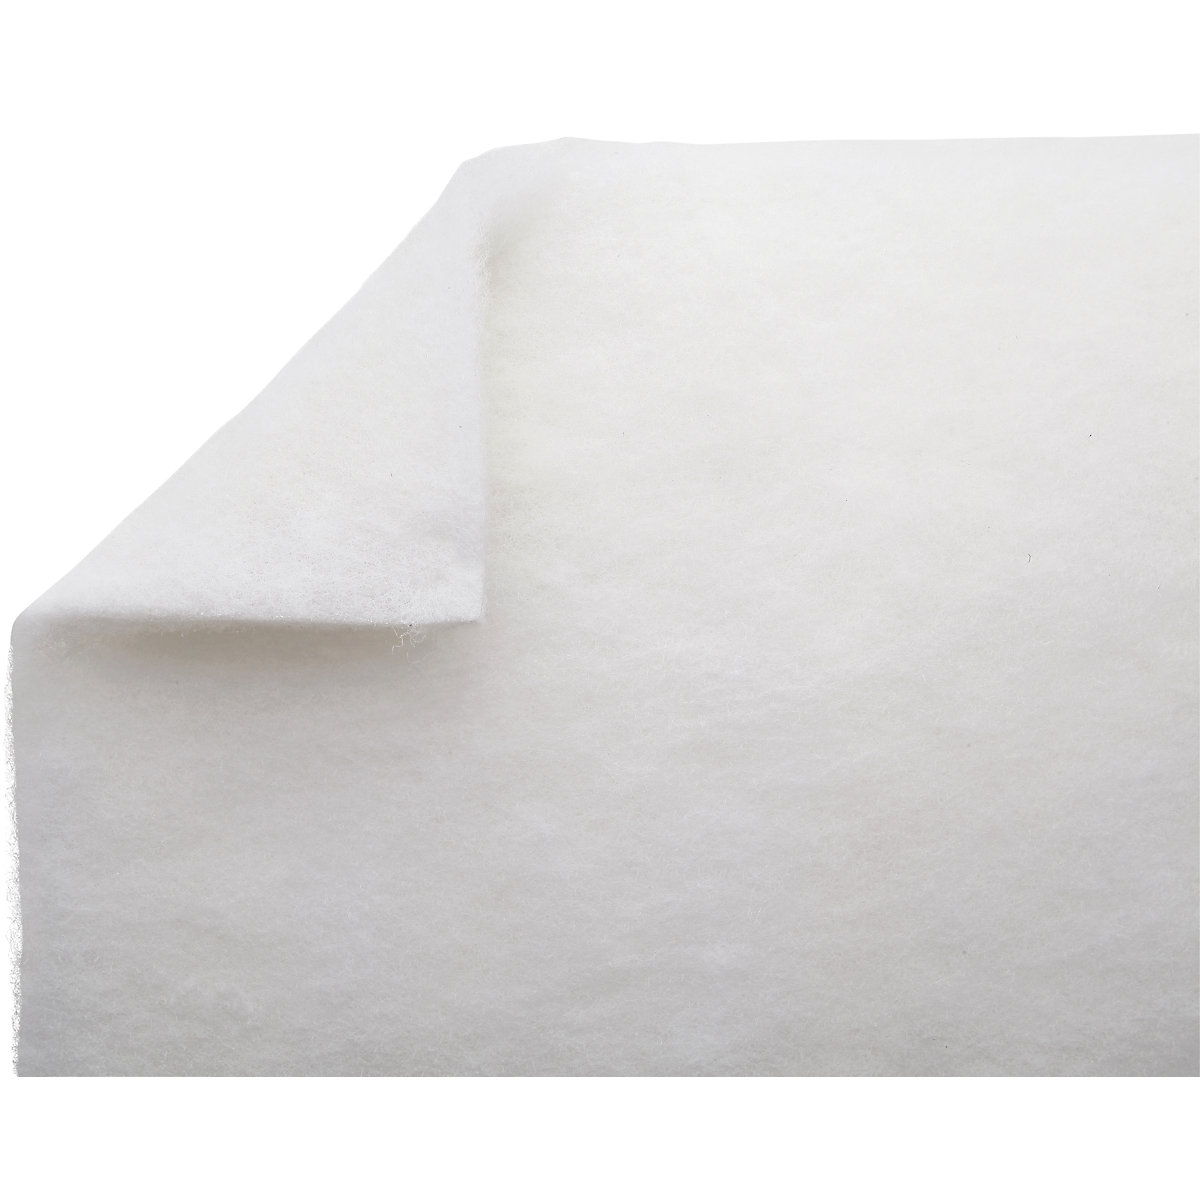 Heavy Fluids absorbent sheeting mat – PIG